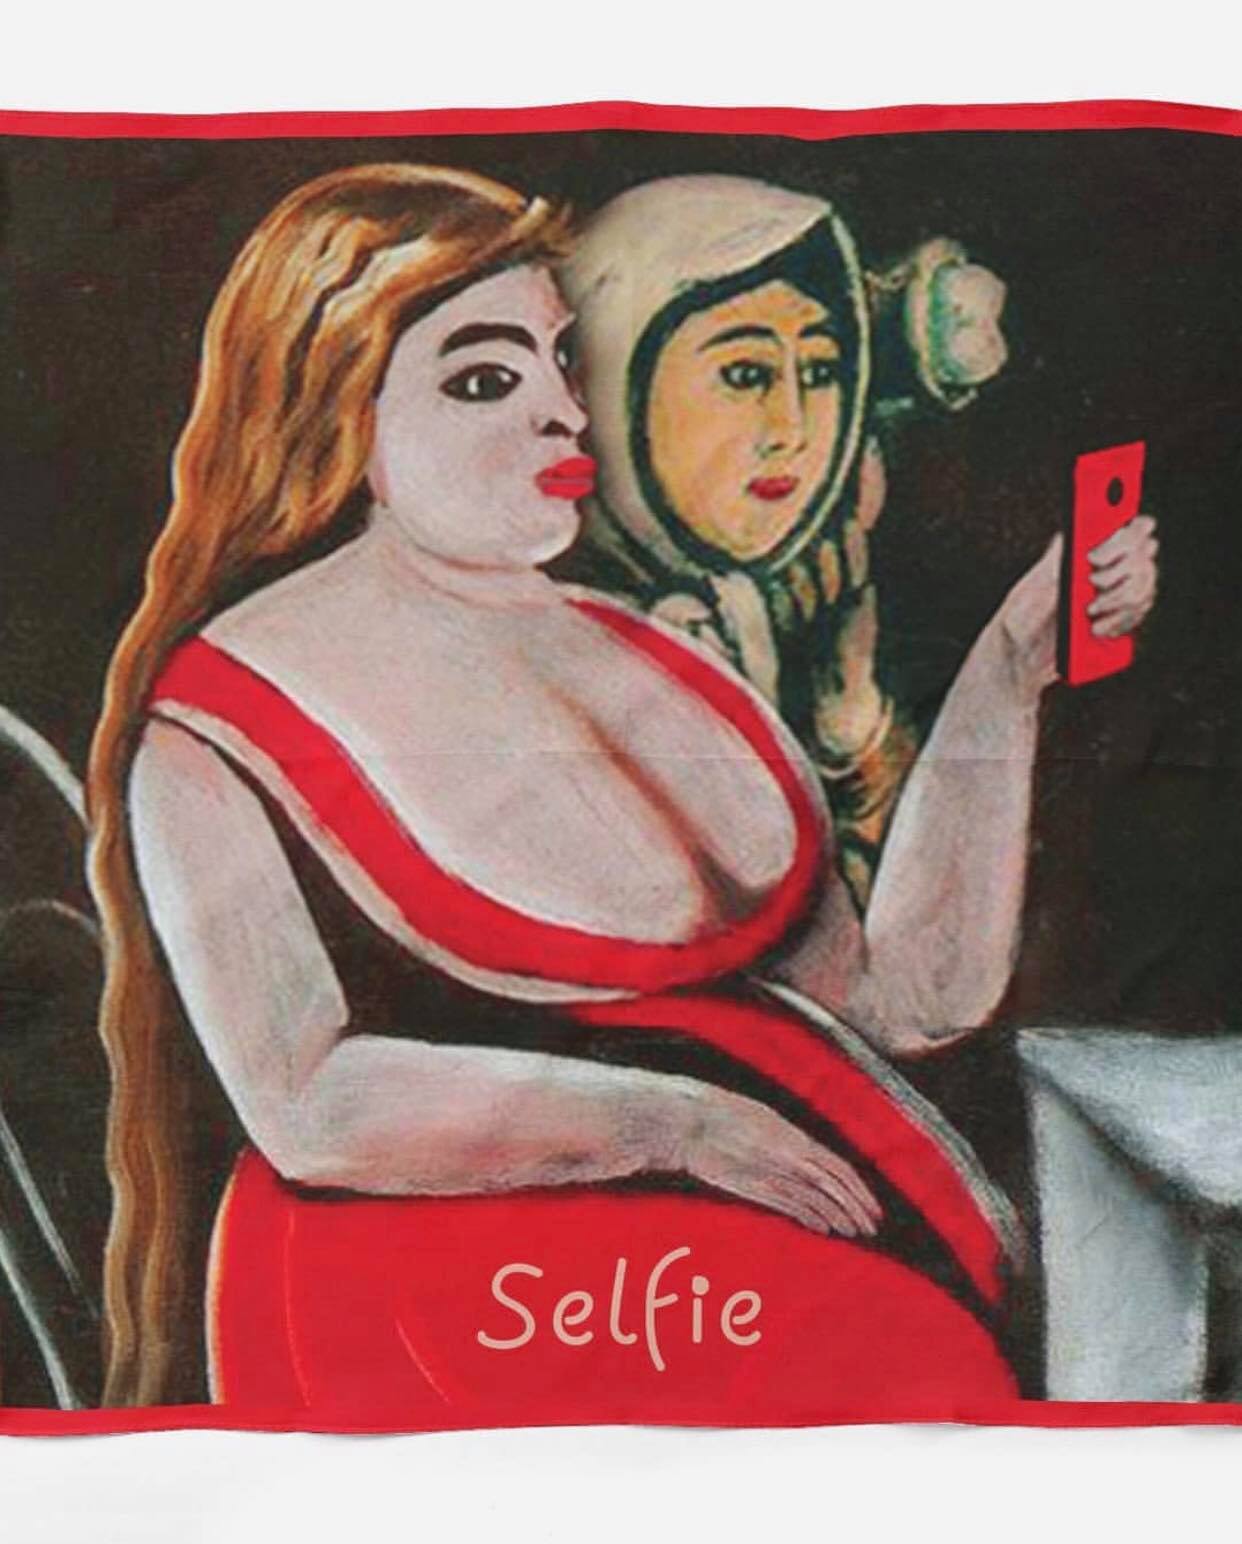 აბრეშუმის შარფი "selfie"